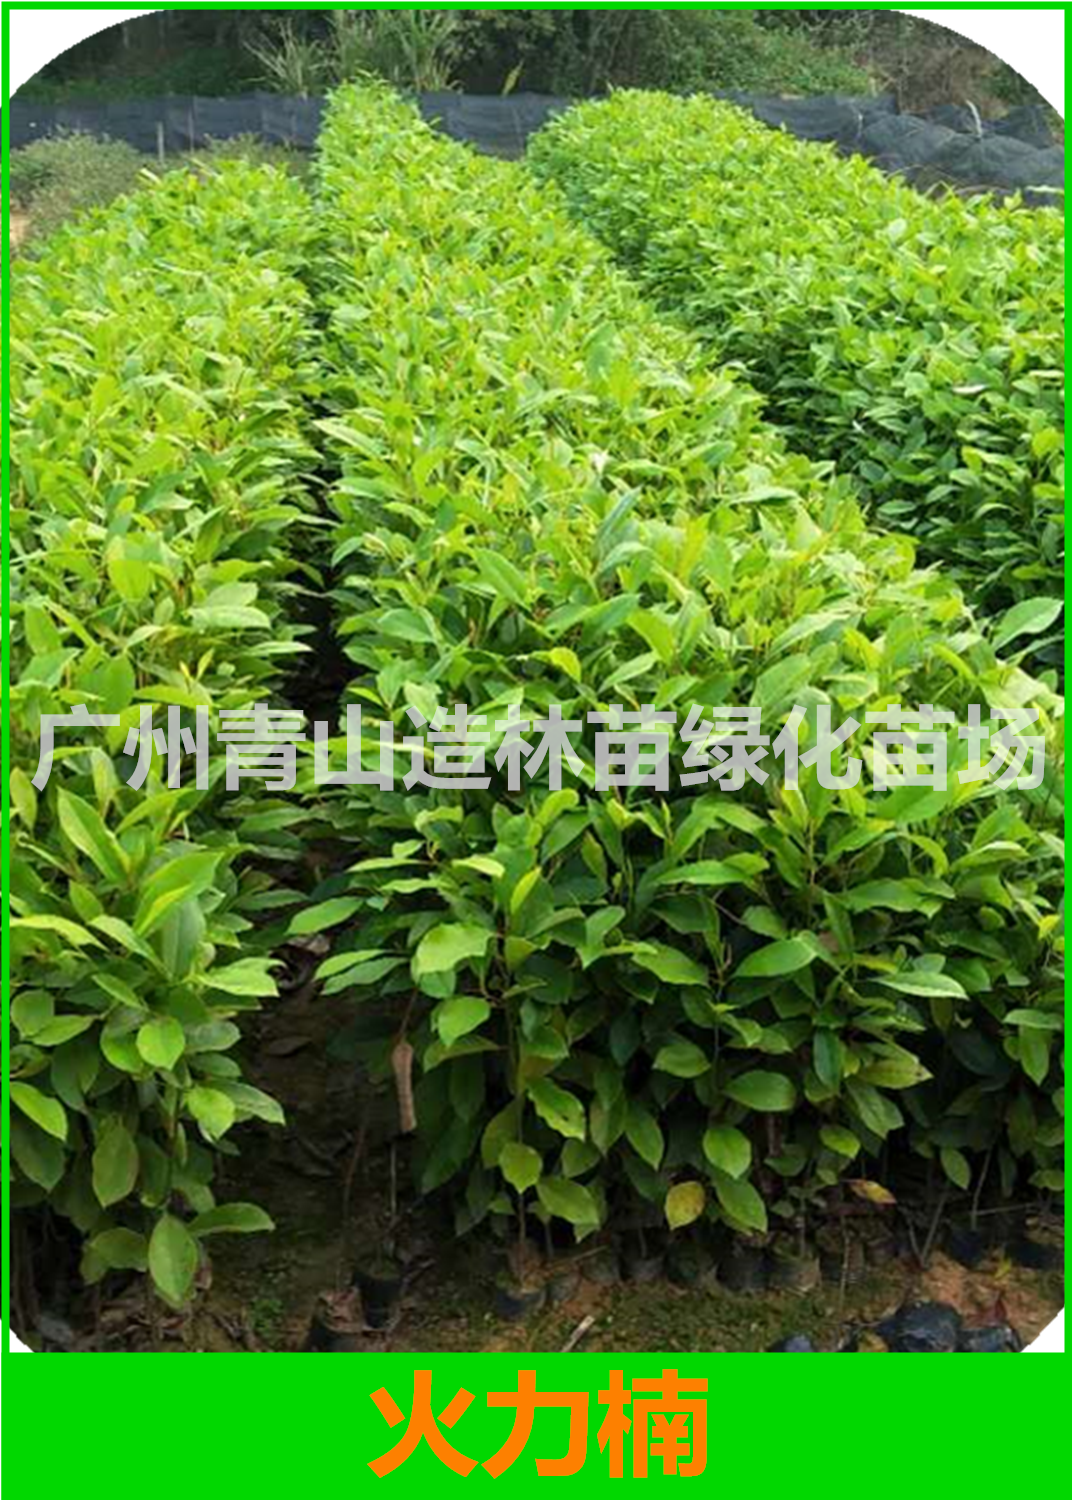 广州火力楠种植基地，广州火力楠种苗批发价，广州火力楠造林苗供应商图片